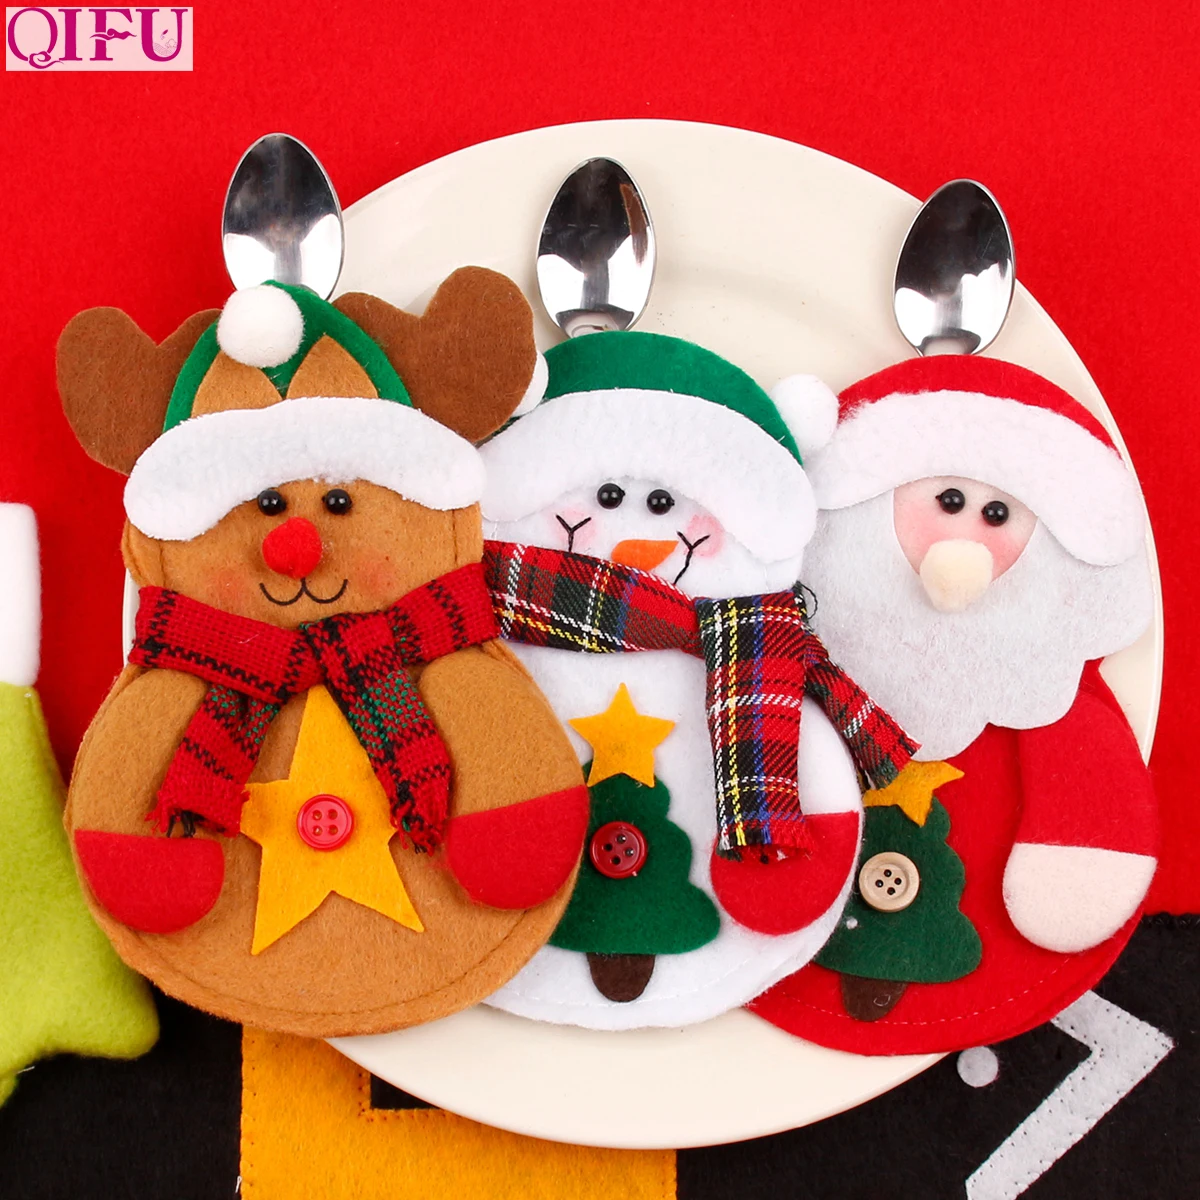 QIFU Санта-Клаус, олени, рождественские ножи, держатели для людей, сумка, Рождественский стол, Декор, рождественские подарки, Navidad с новым года